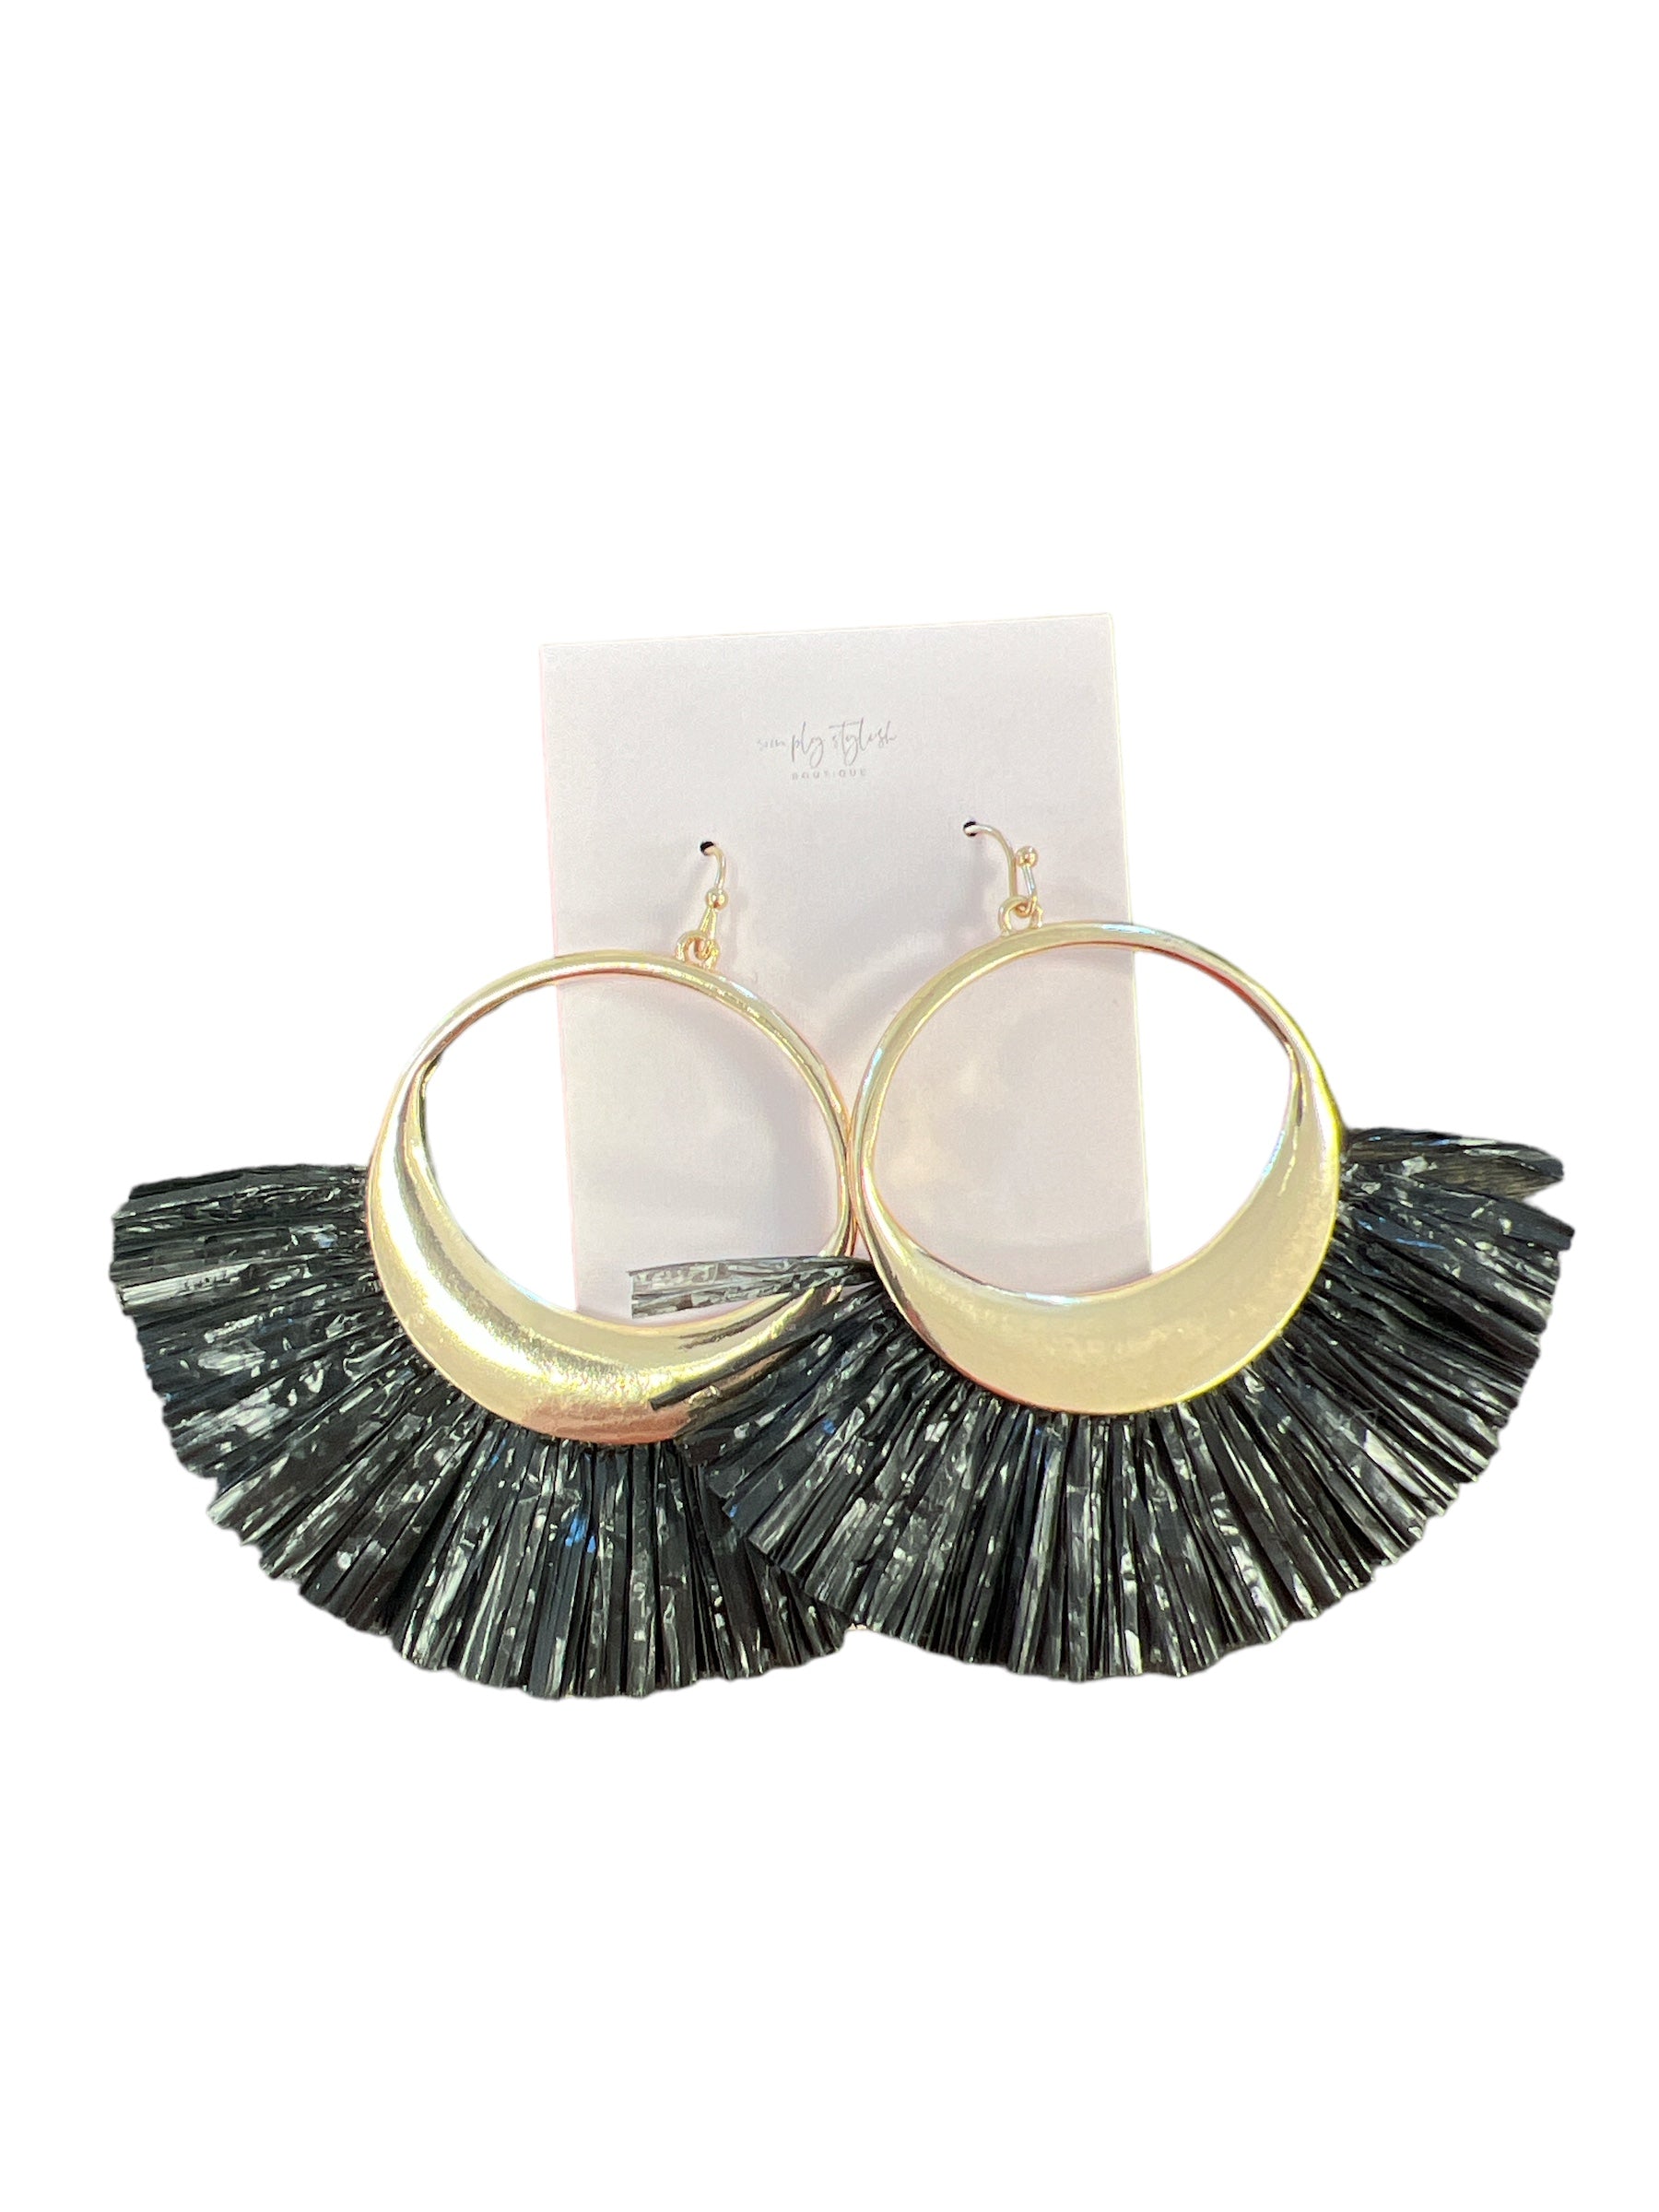 Fan Girl Earring-410 Jewelry-Simply Stylish Boutique-Simply Stylish Boutique | Women’s & Kid’s Fashion | Paducah, KY